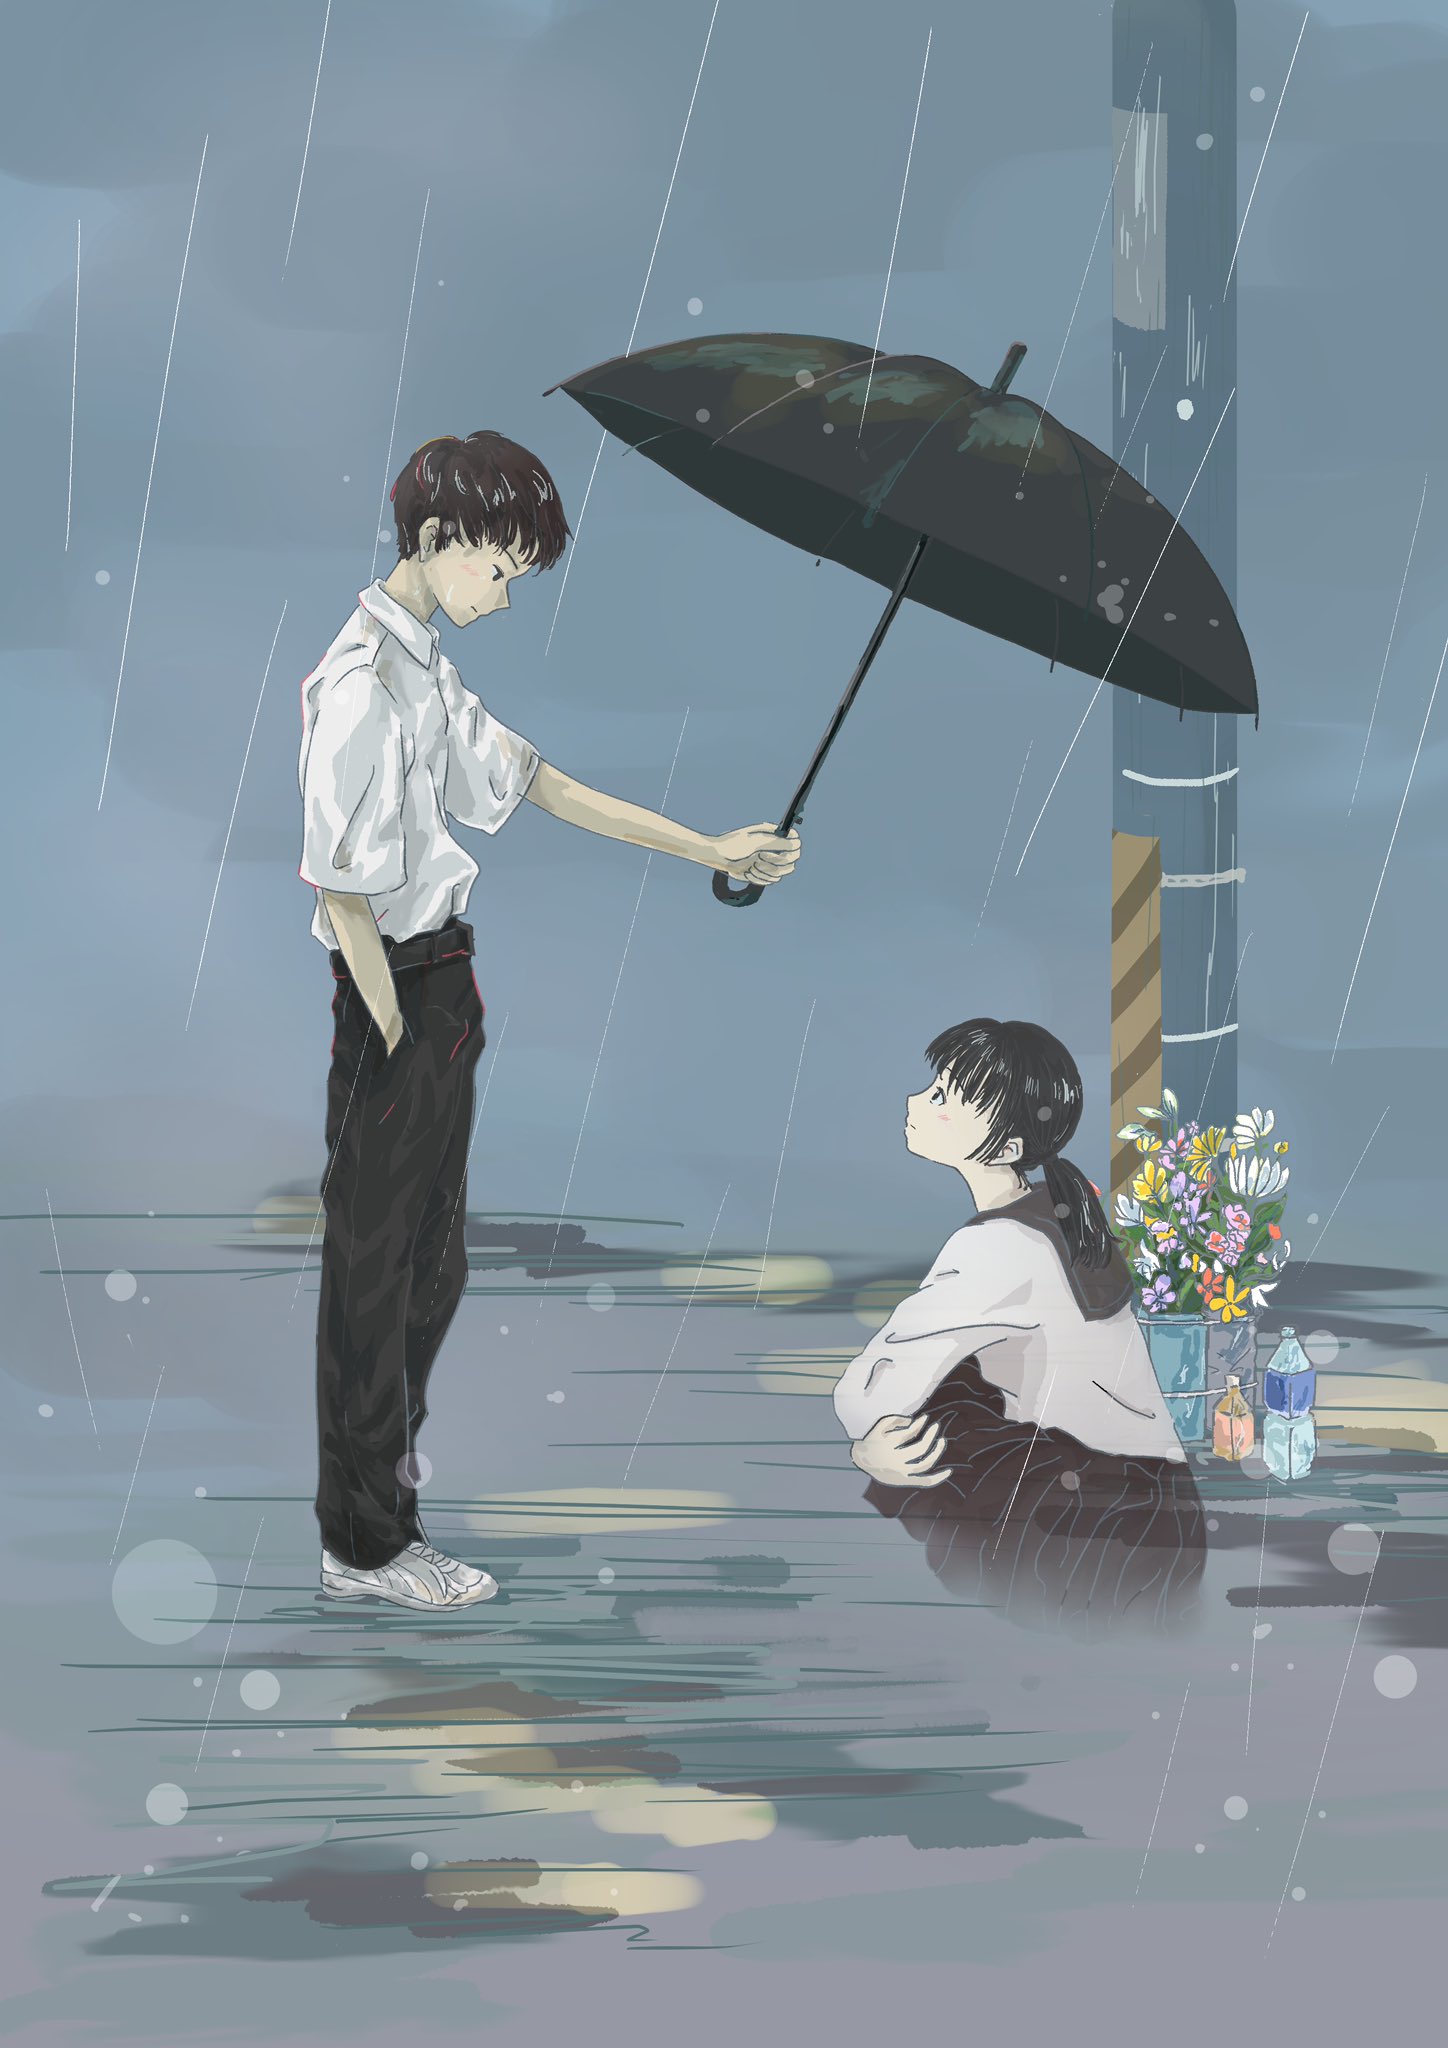 Мальчик держит зонт над девочкой